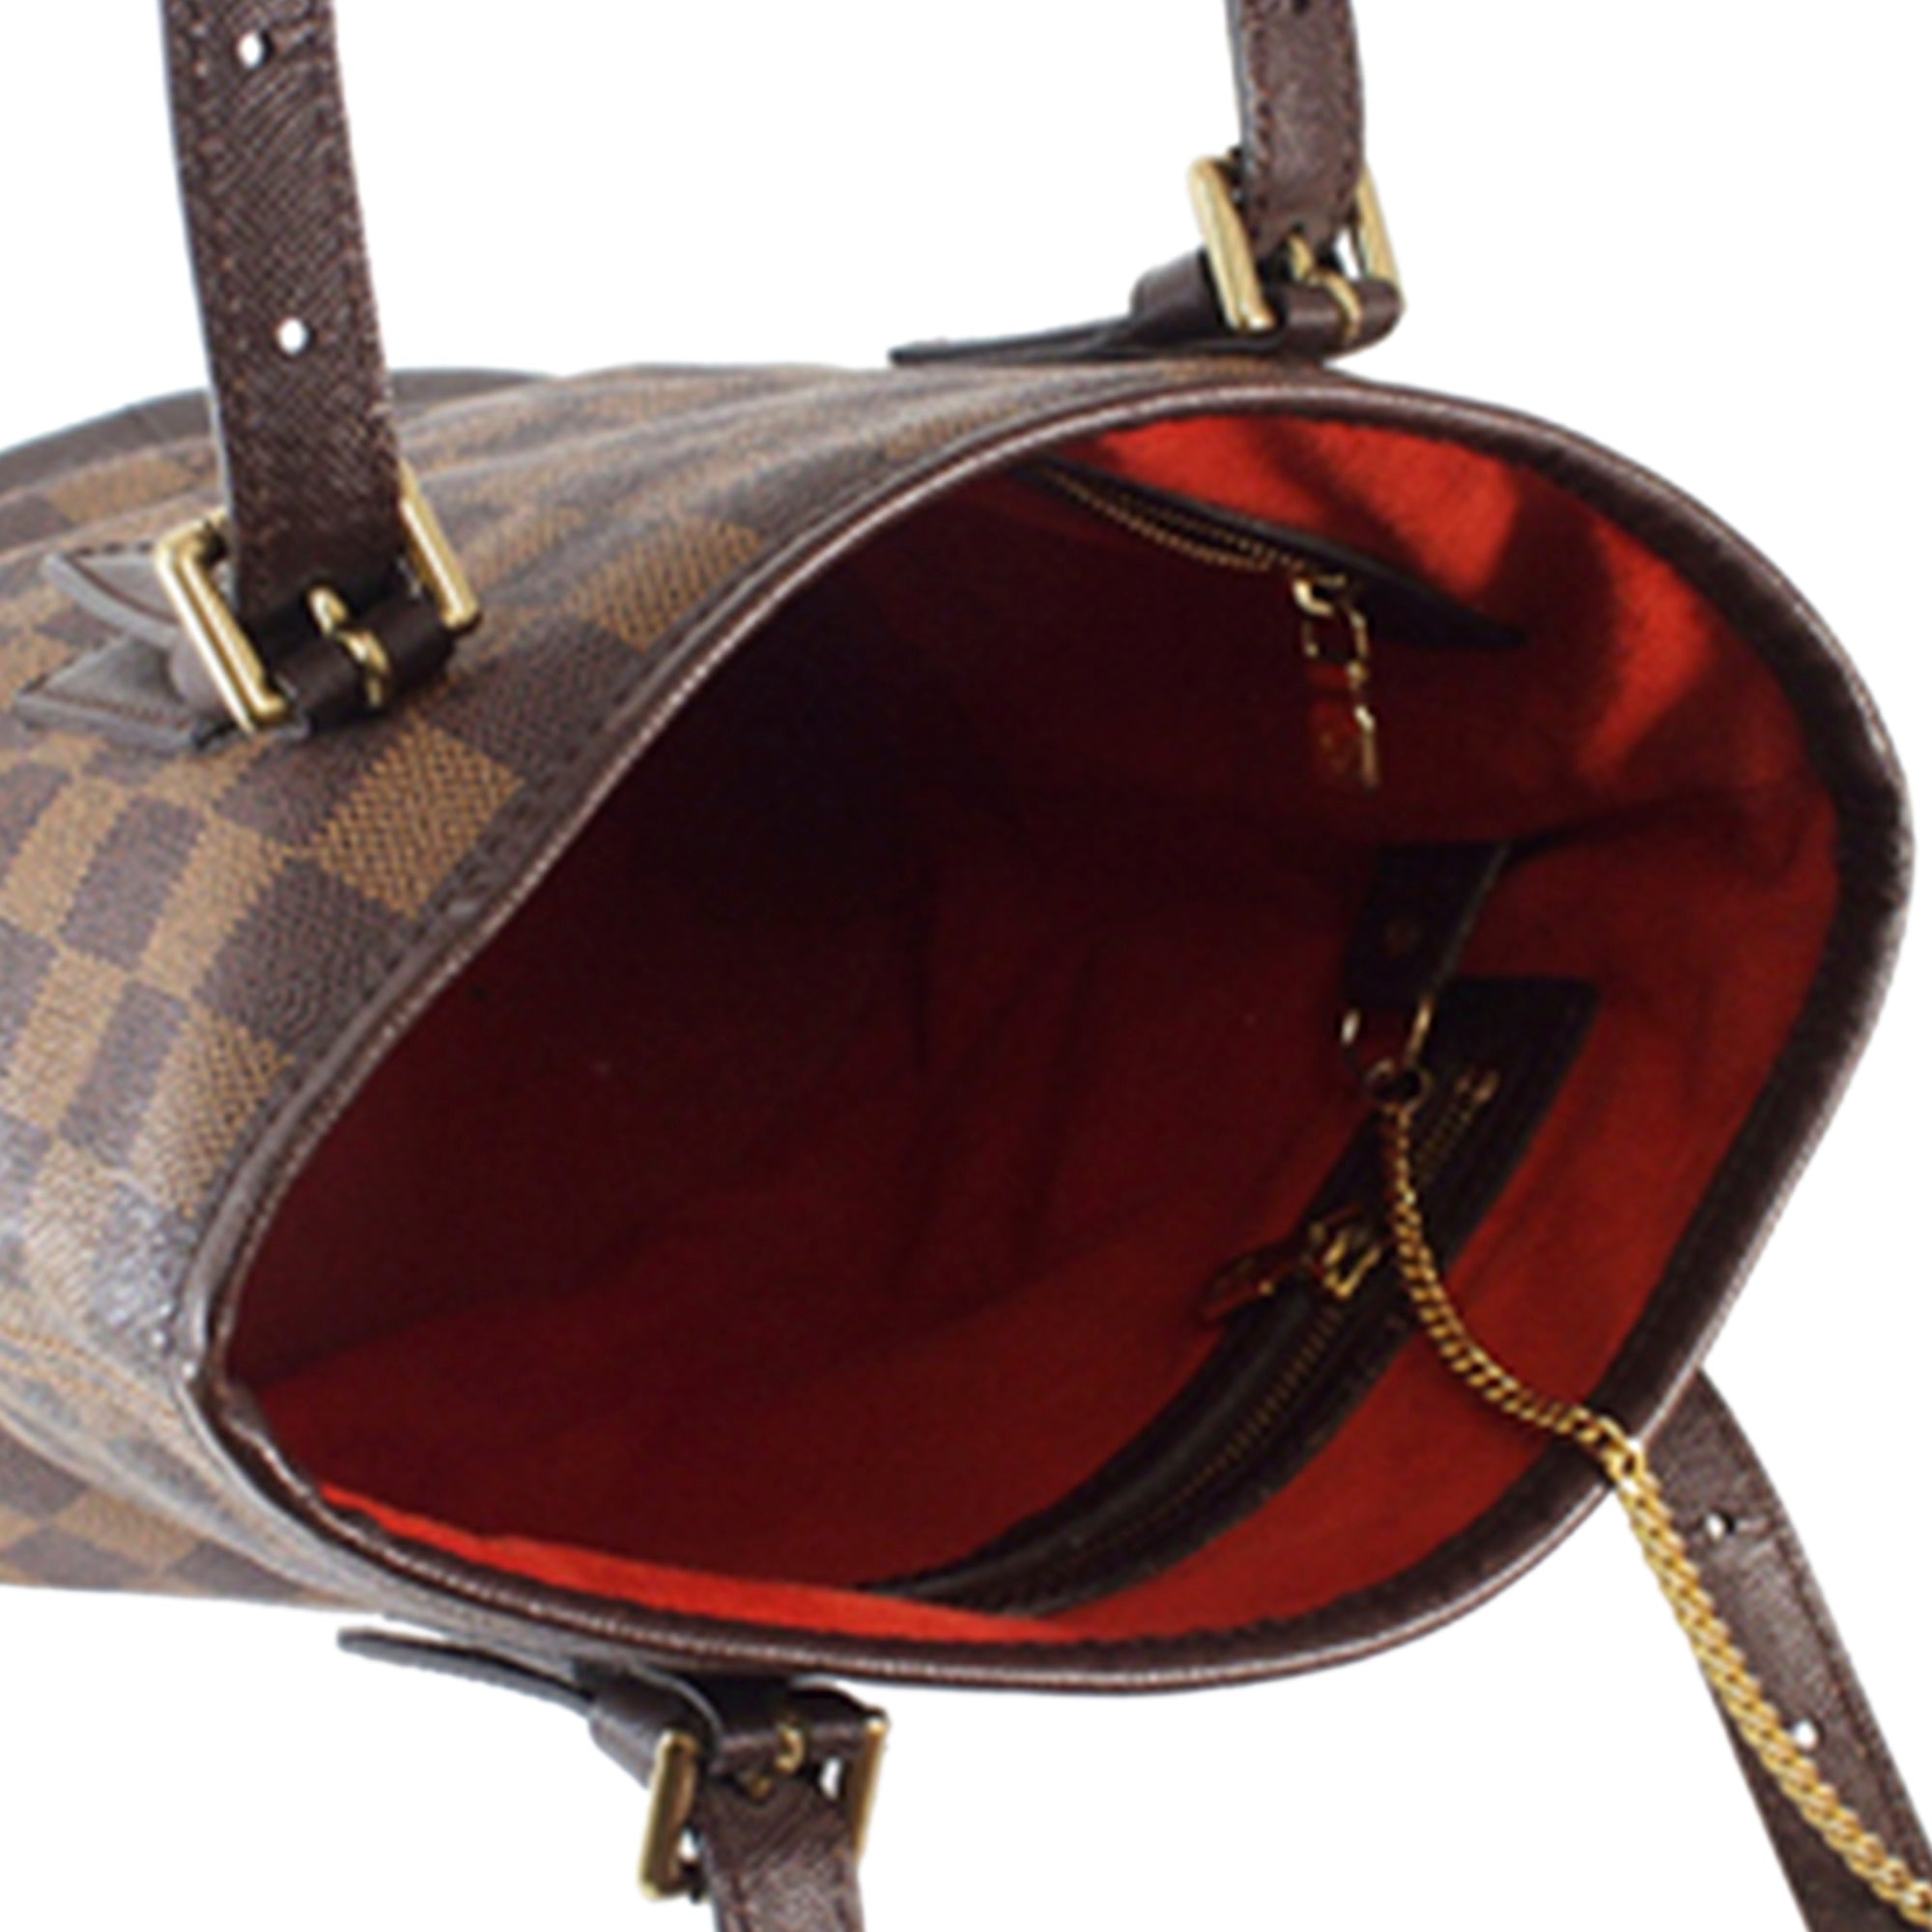 Vintage Louis Vuitton Damier Ebene Marais PM Bucket Bag AR0948 071123 –  KimmieBBags LLC